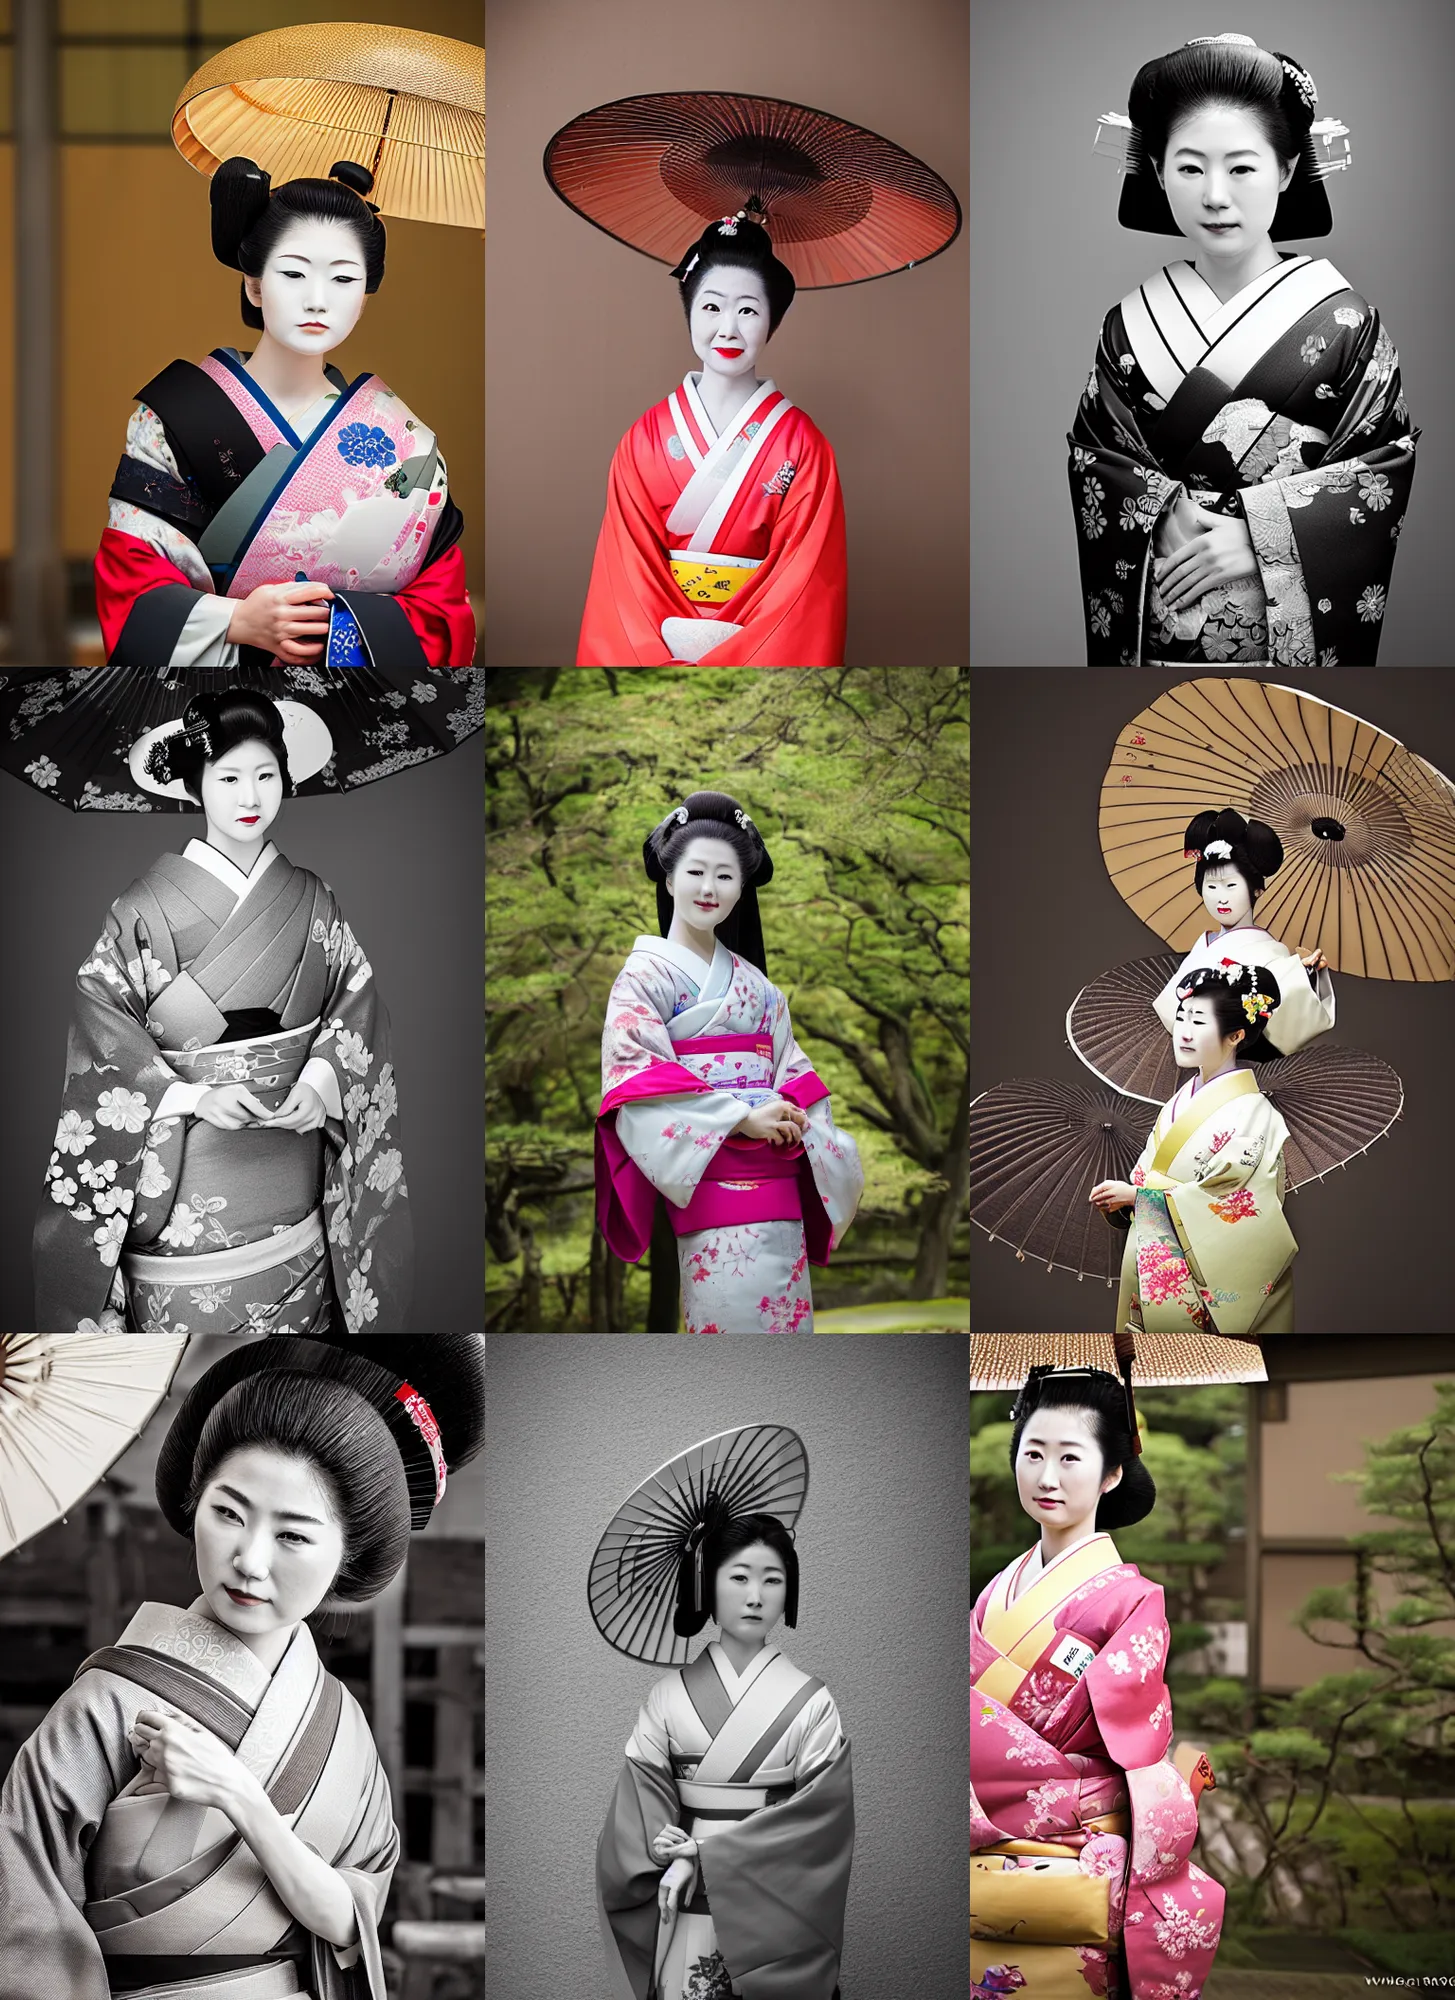 Prompt: Portrait Photograph of a Japanese Geisha FPP Cine8 50D